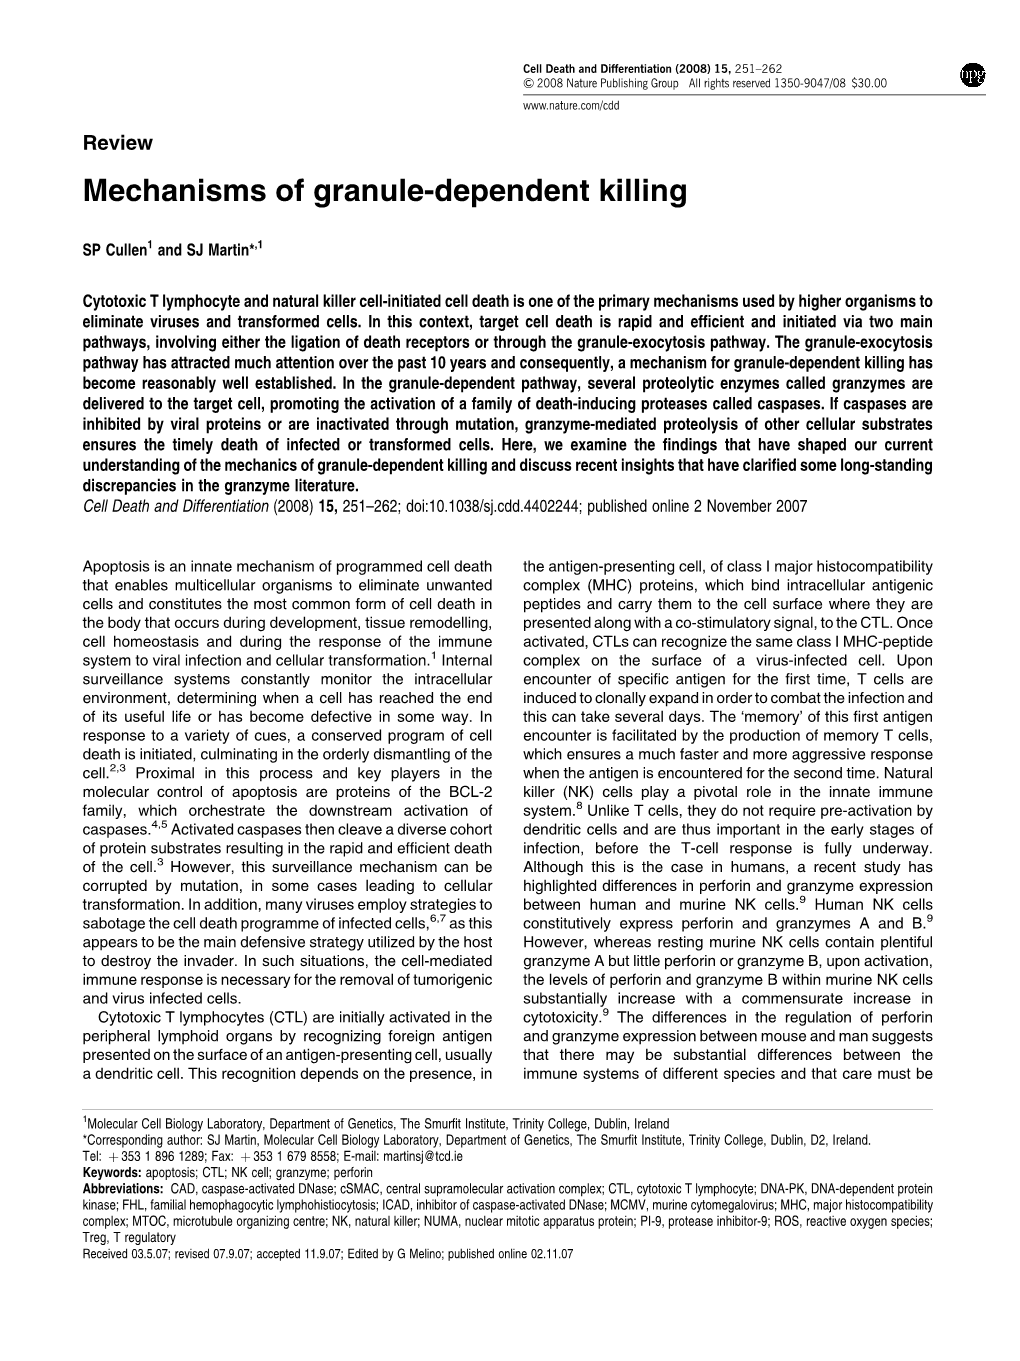 Mechanisms of Granule-Dependent Killing